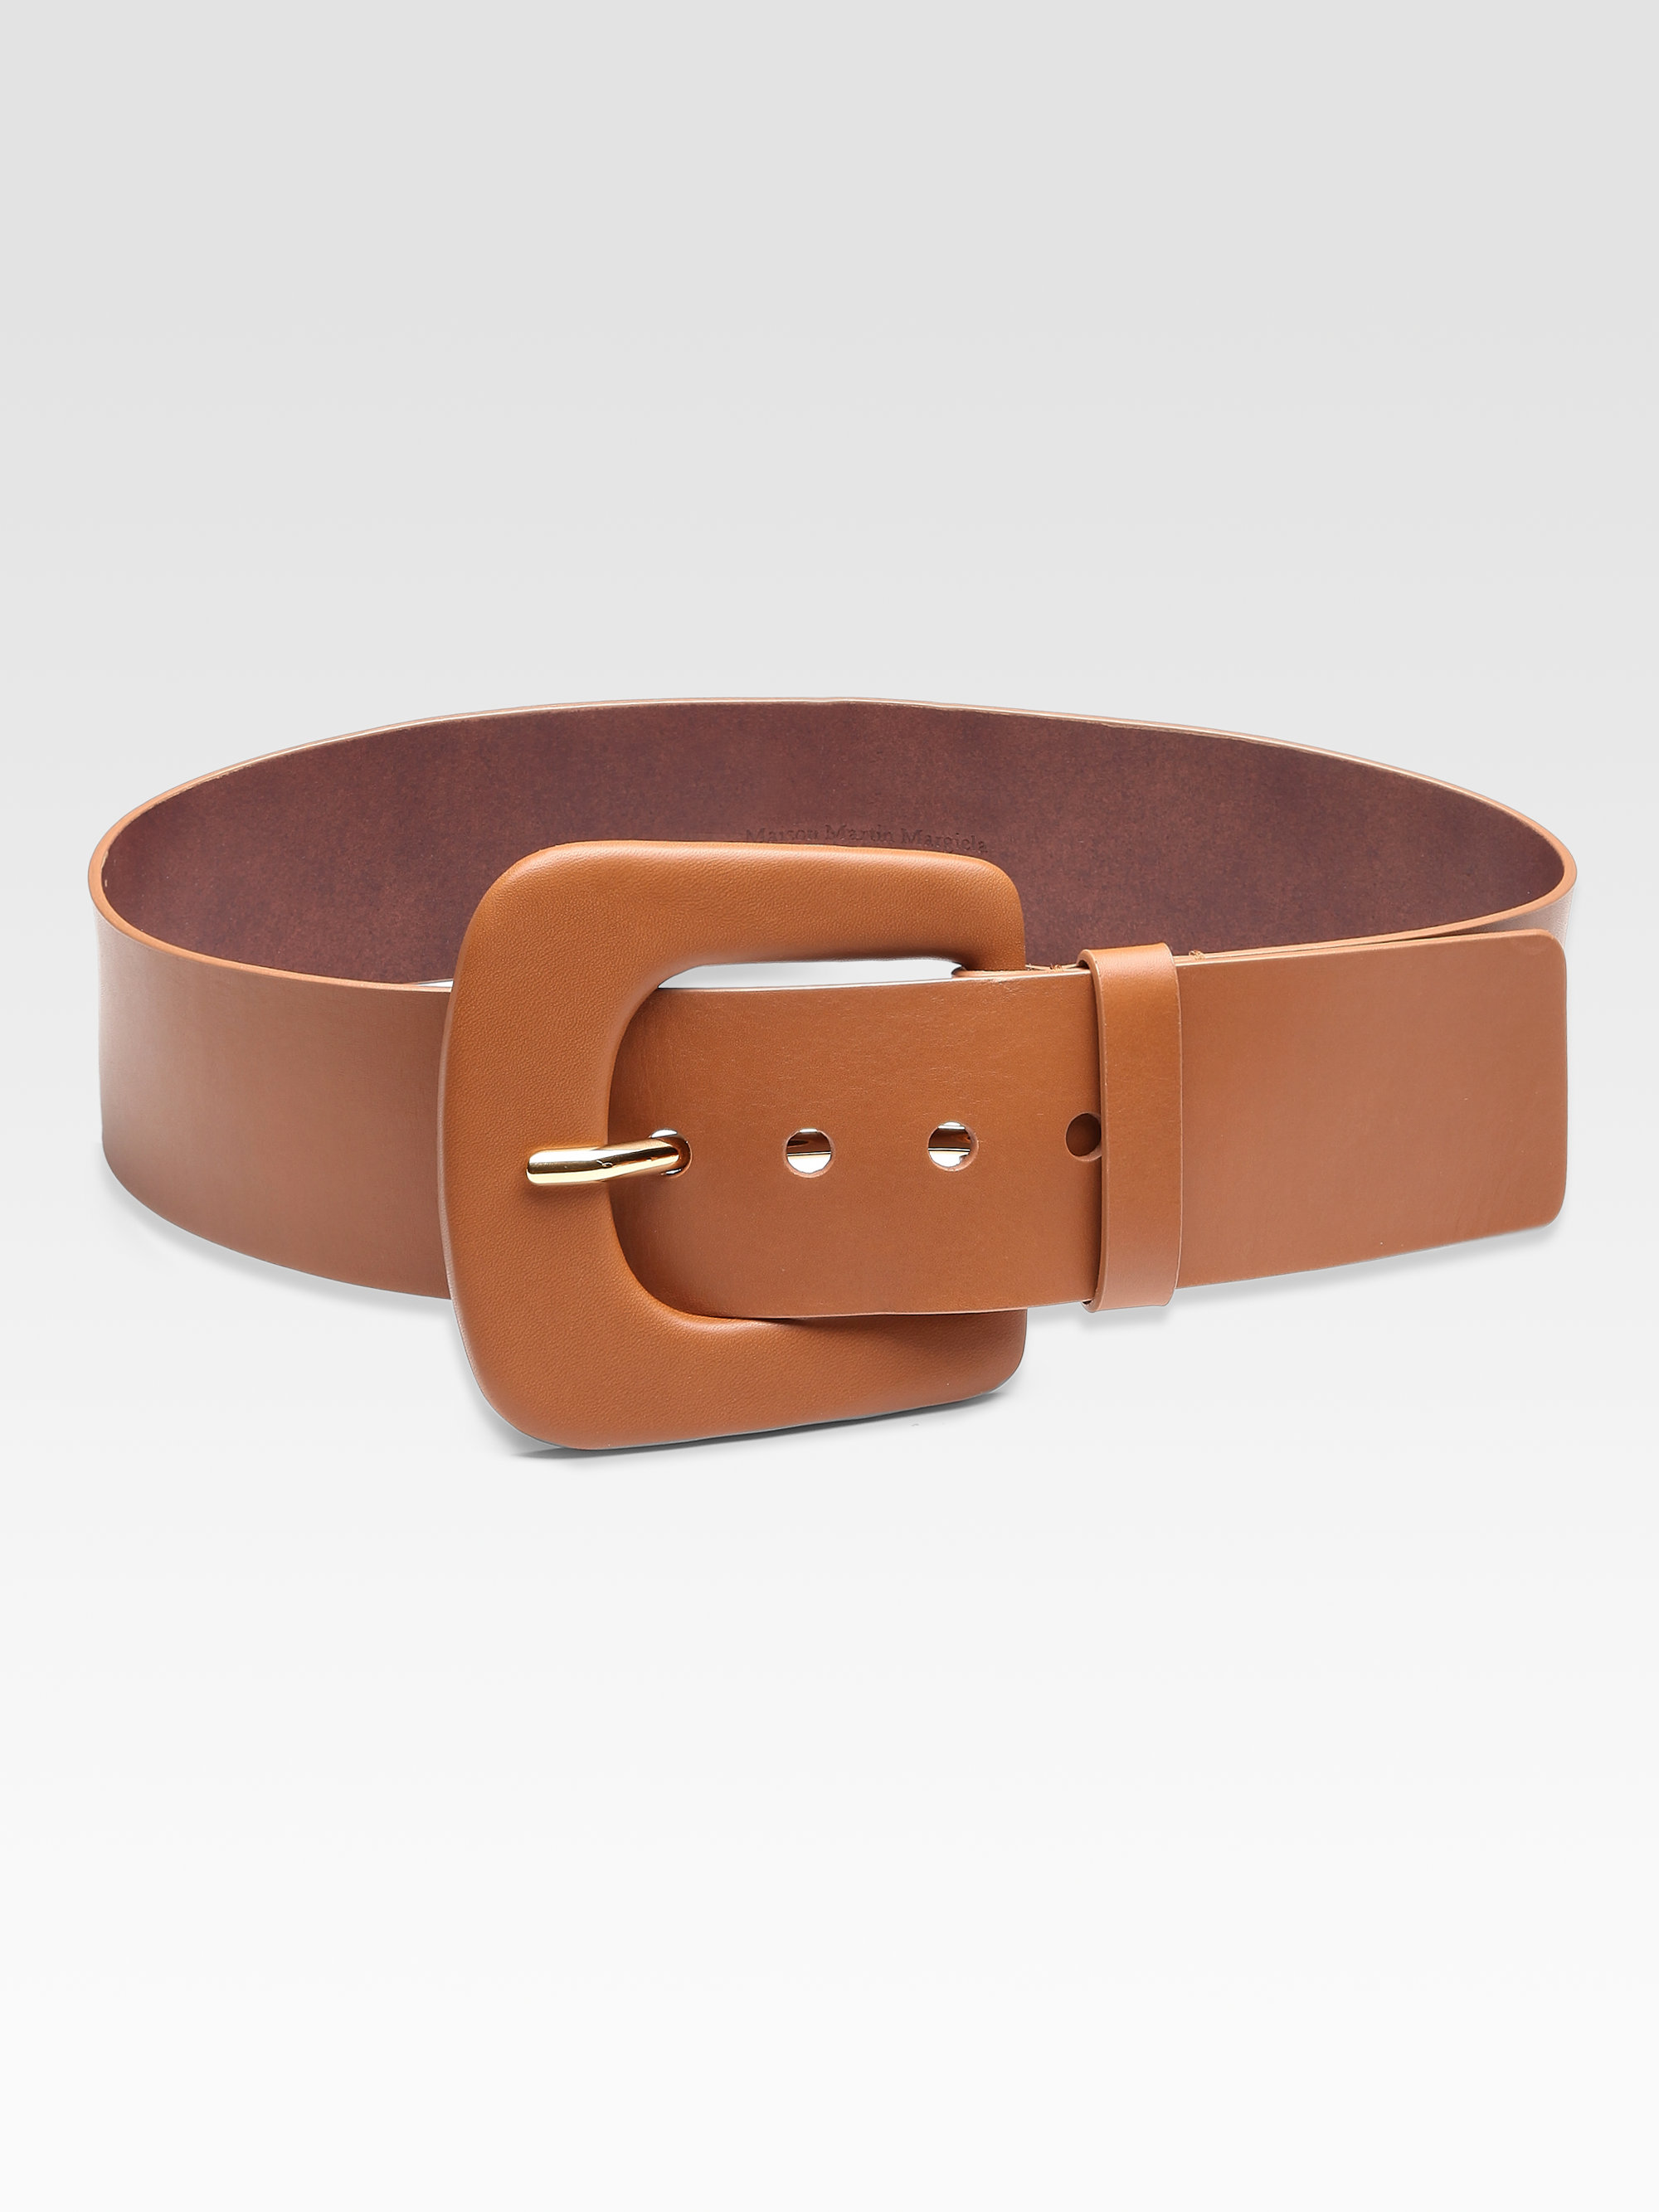 Maison Margiela Wide Leather Belt in Brown | Lyst